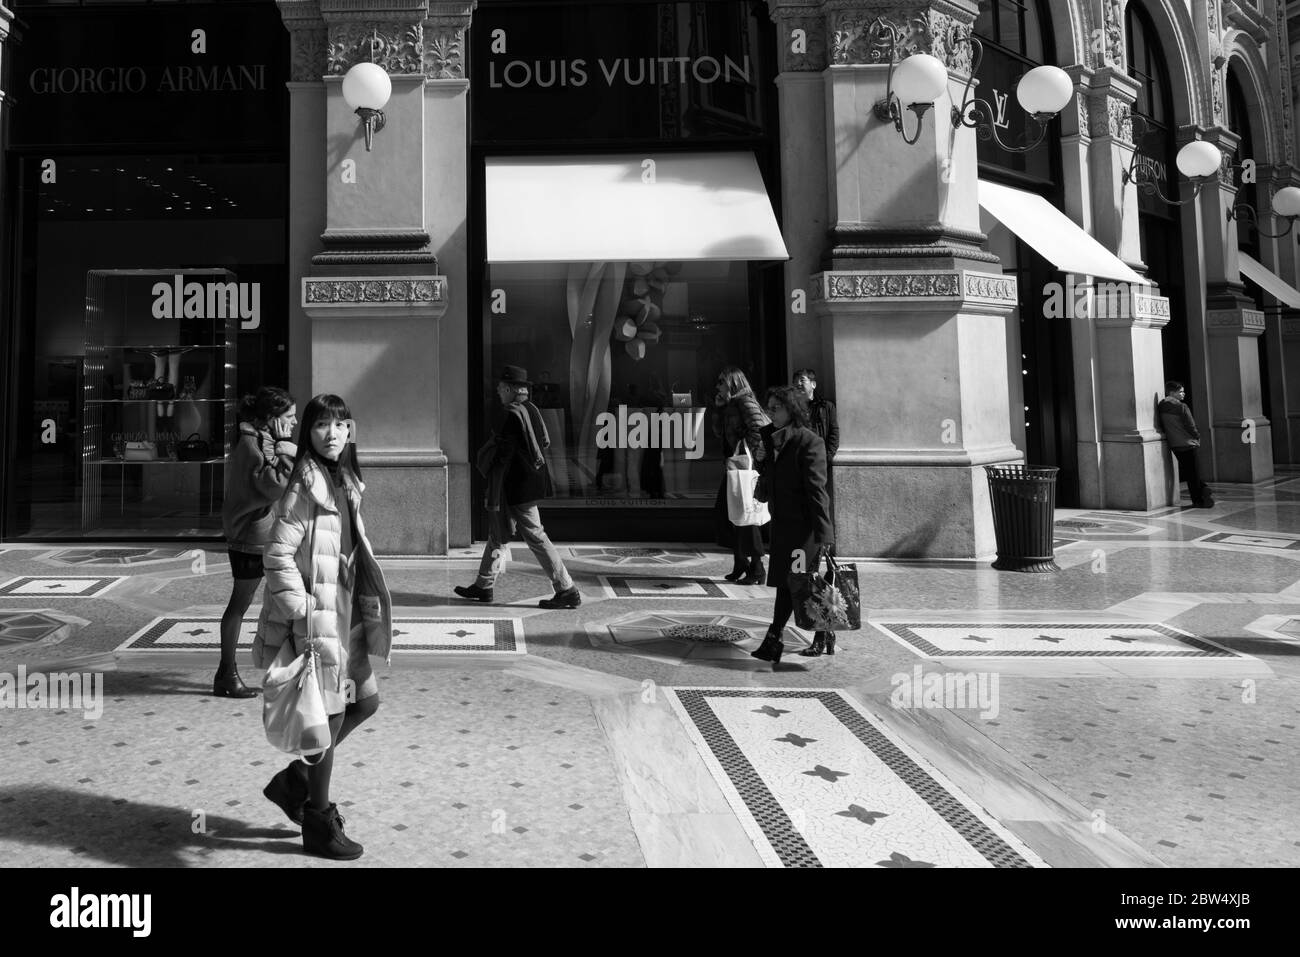 MAILAND, ITALIEN - 16, MÄRZ 2018: Schwarz-weiß Bild von Menschen in der Galleria Vittorio Emanuele II, einem alten Einkaufszentrum in Mailand, Italien Stockfoto